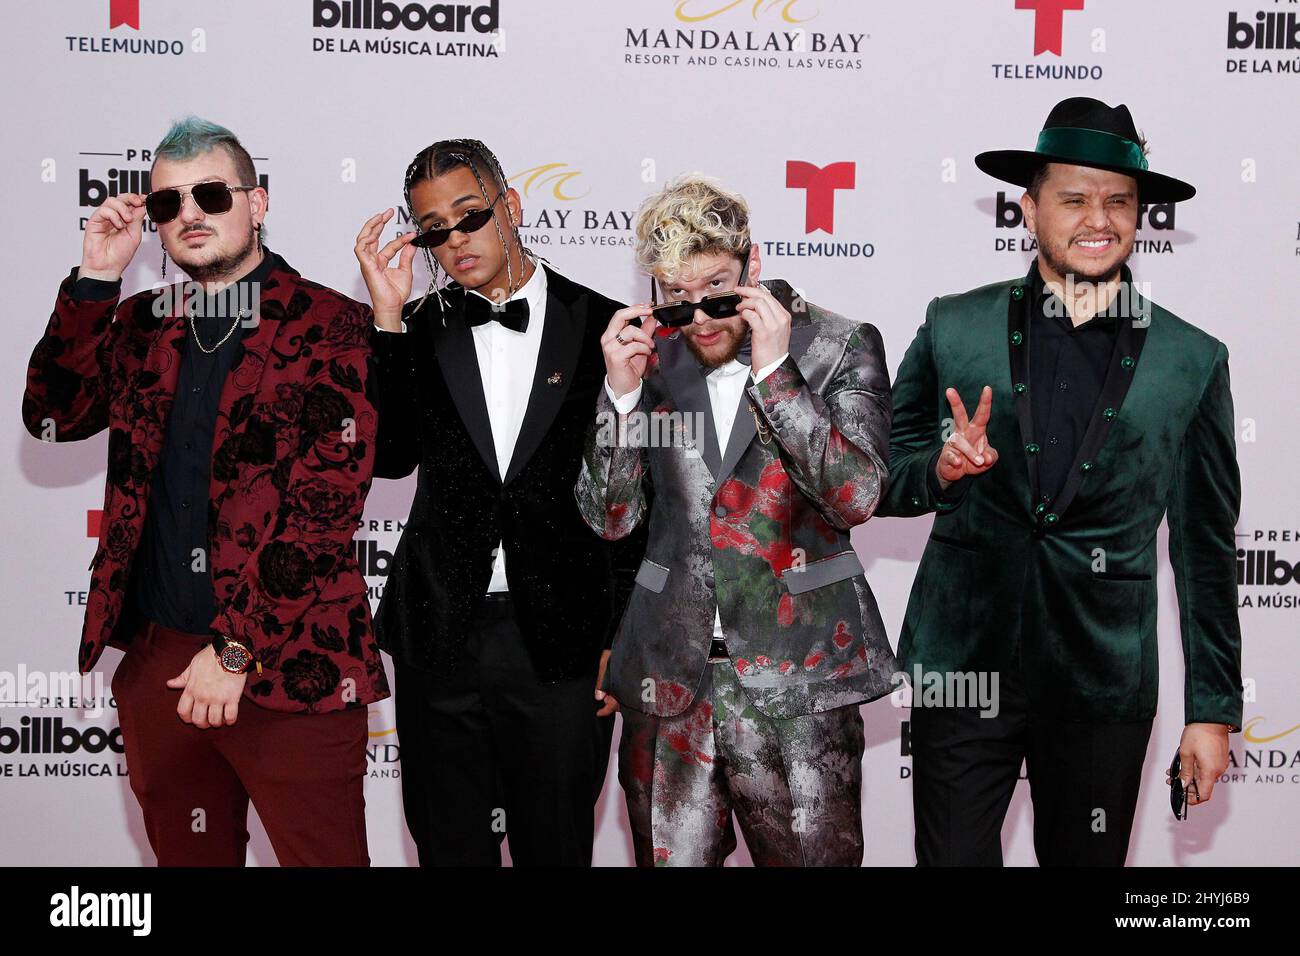 Piso 21 partecipa al Billboard Latin Music Awards 2019 che si tiene al Mandalay Bay Resort & Casino di Las Vegas Foto Stock